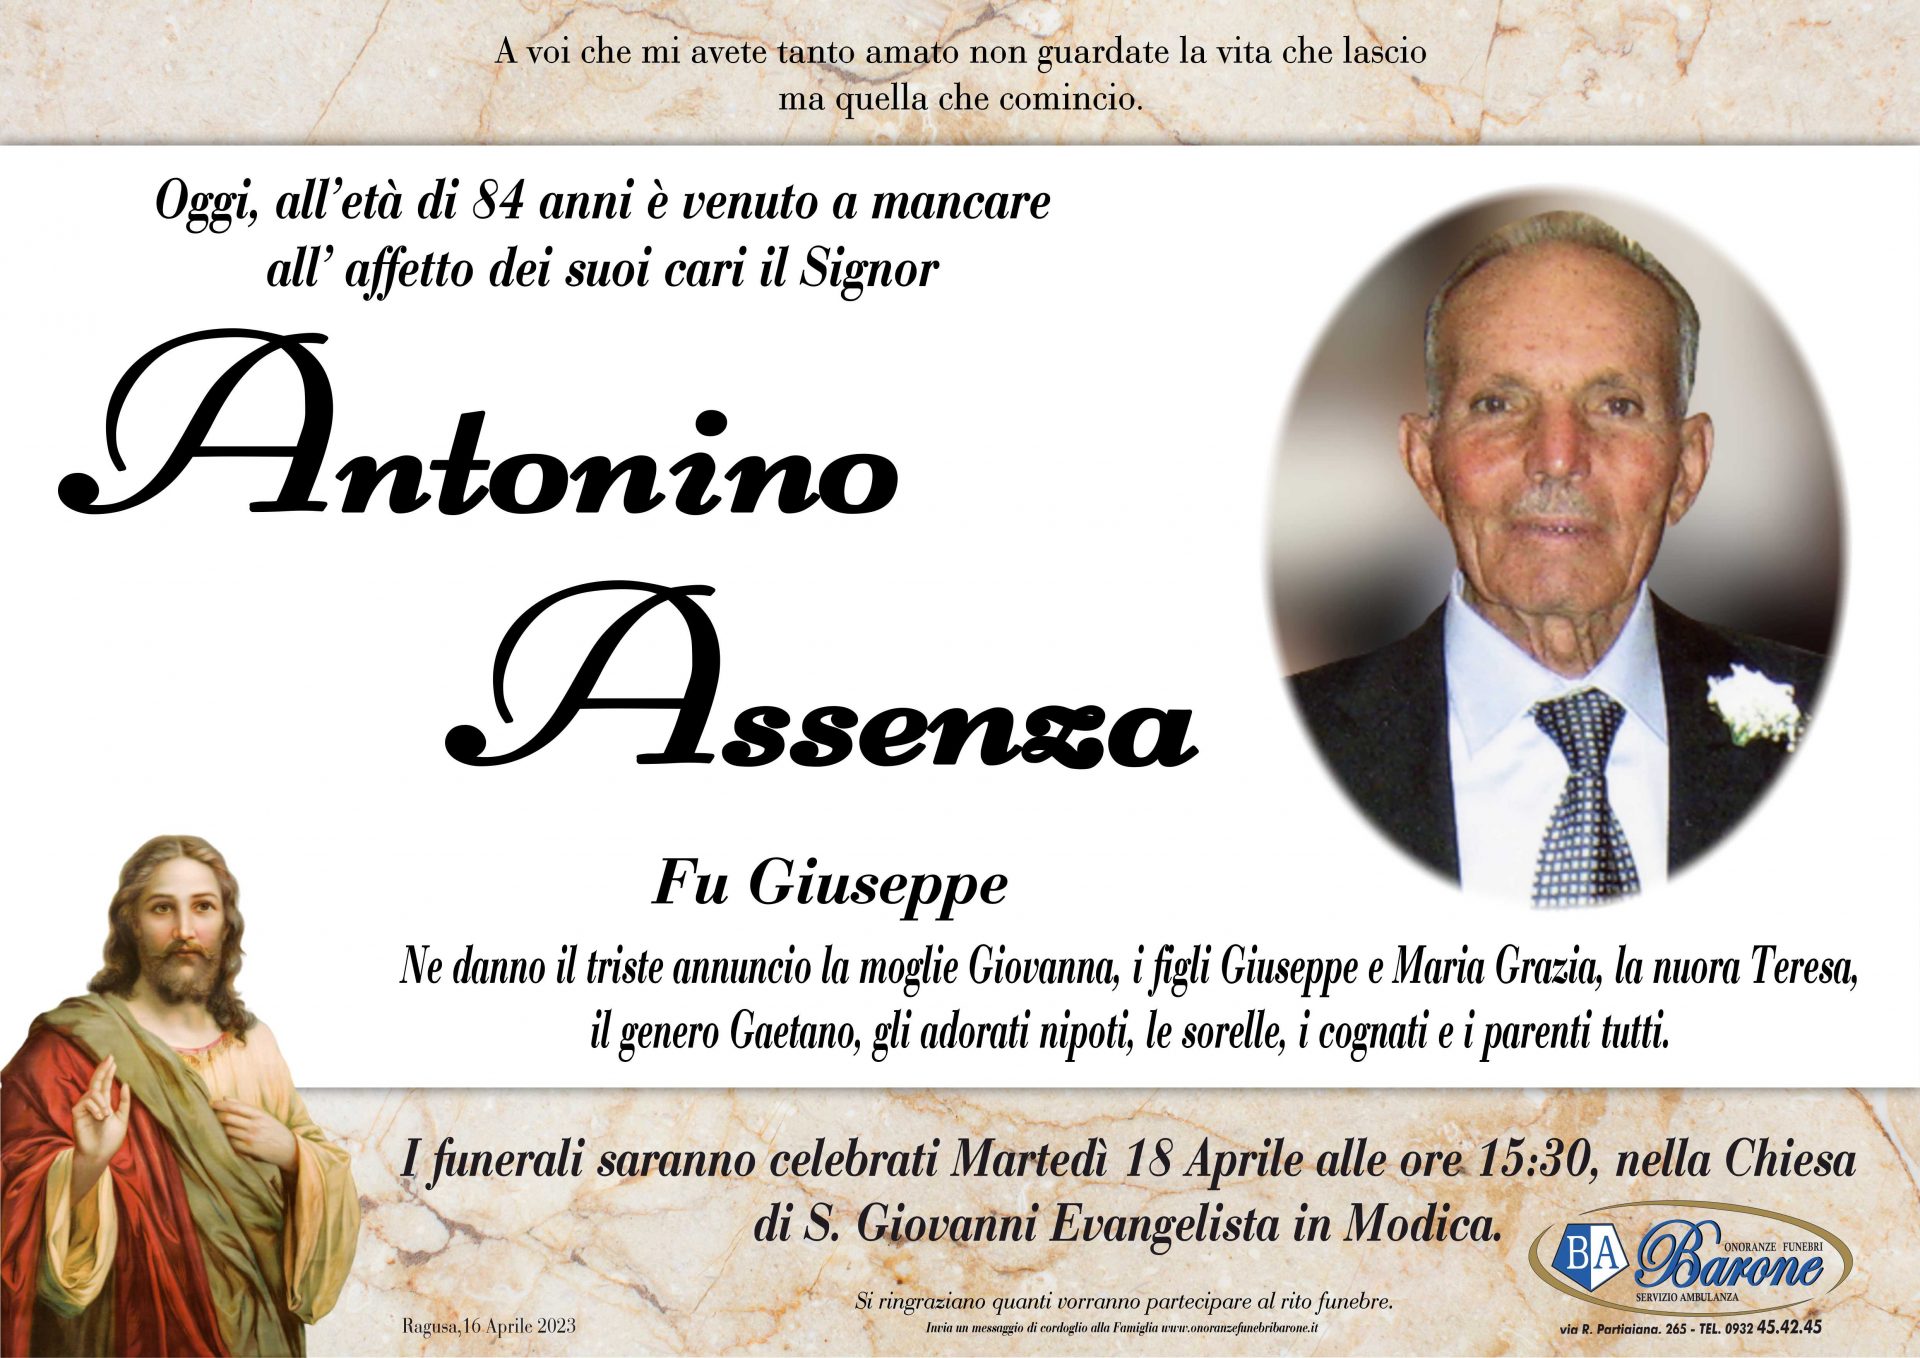 Antonino Assenza